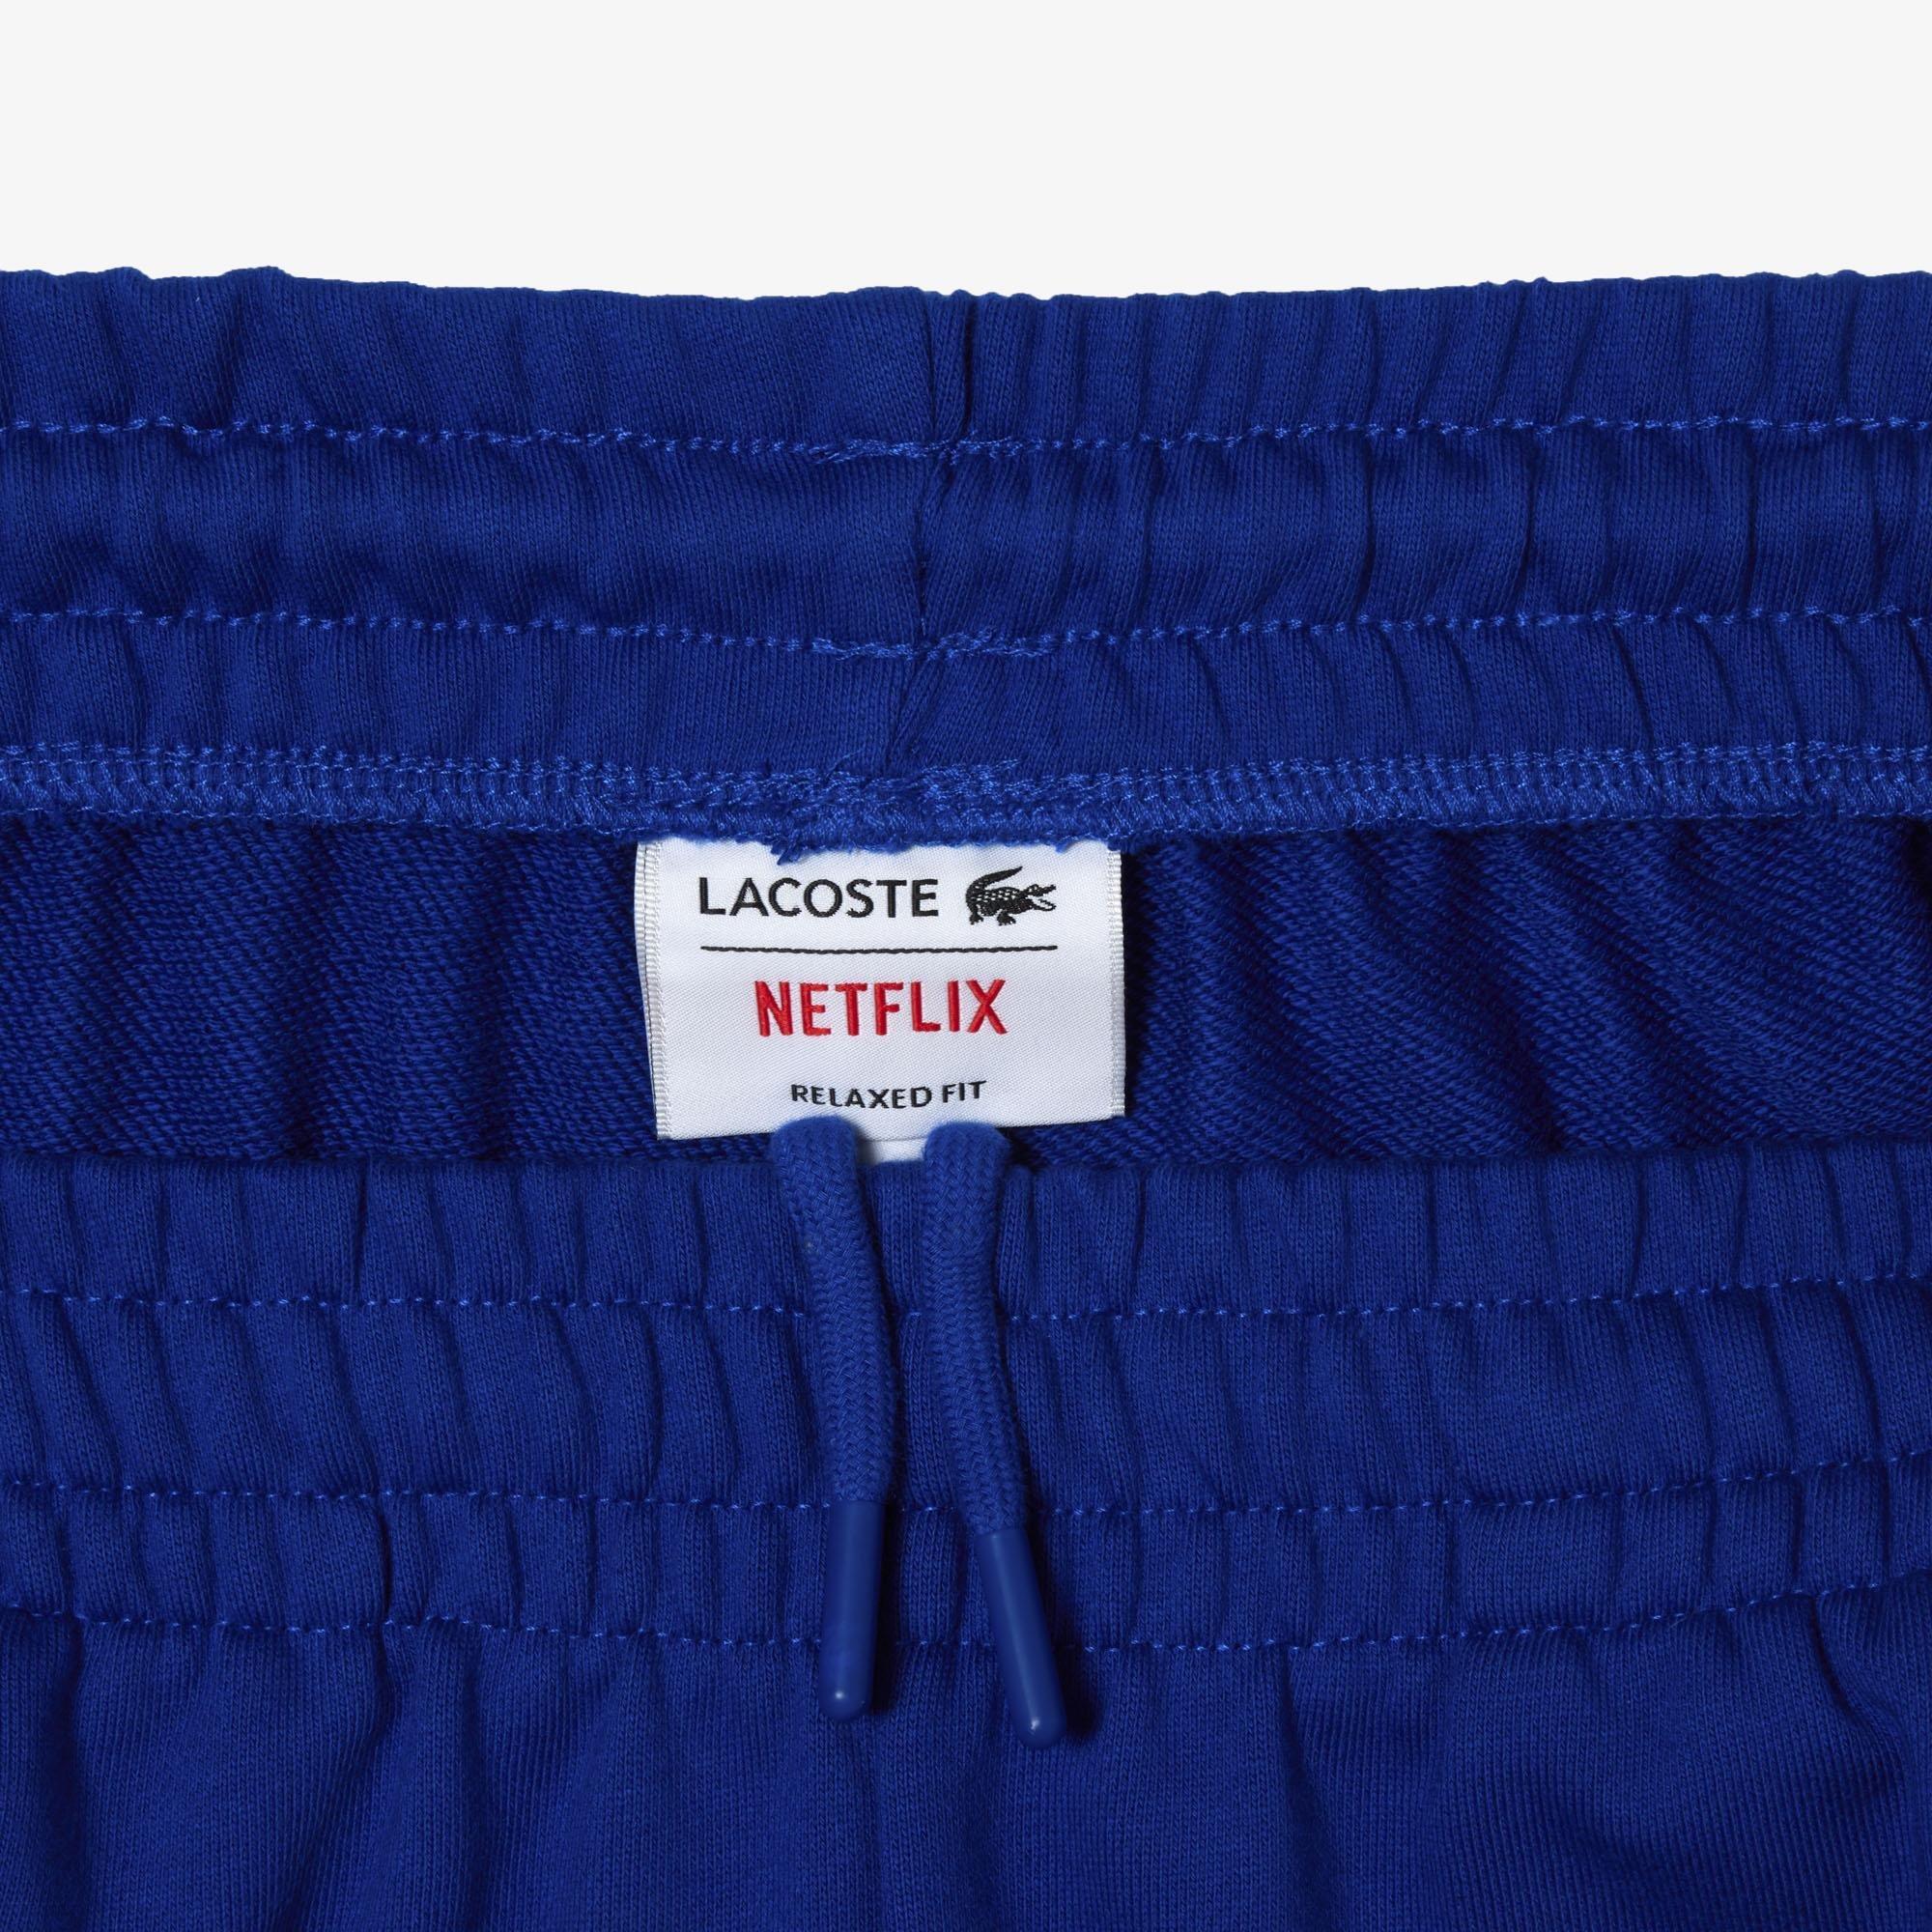 Lacoste x Netflix Unisex Relaxed Fit Renk Bloklu Lacivert Eşofman Altı. 7